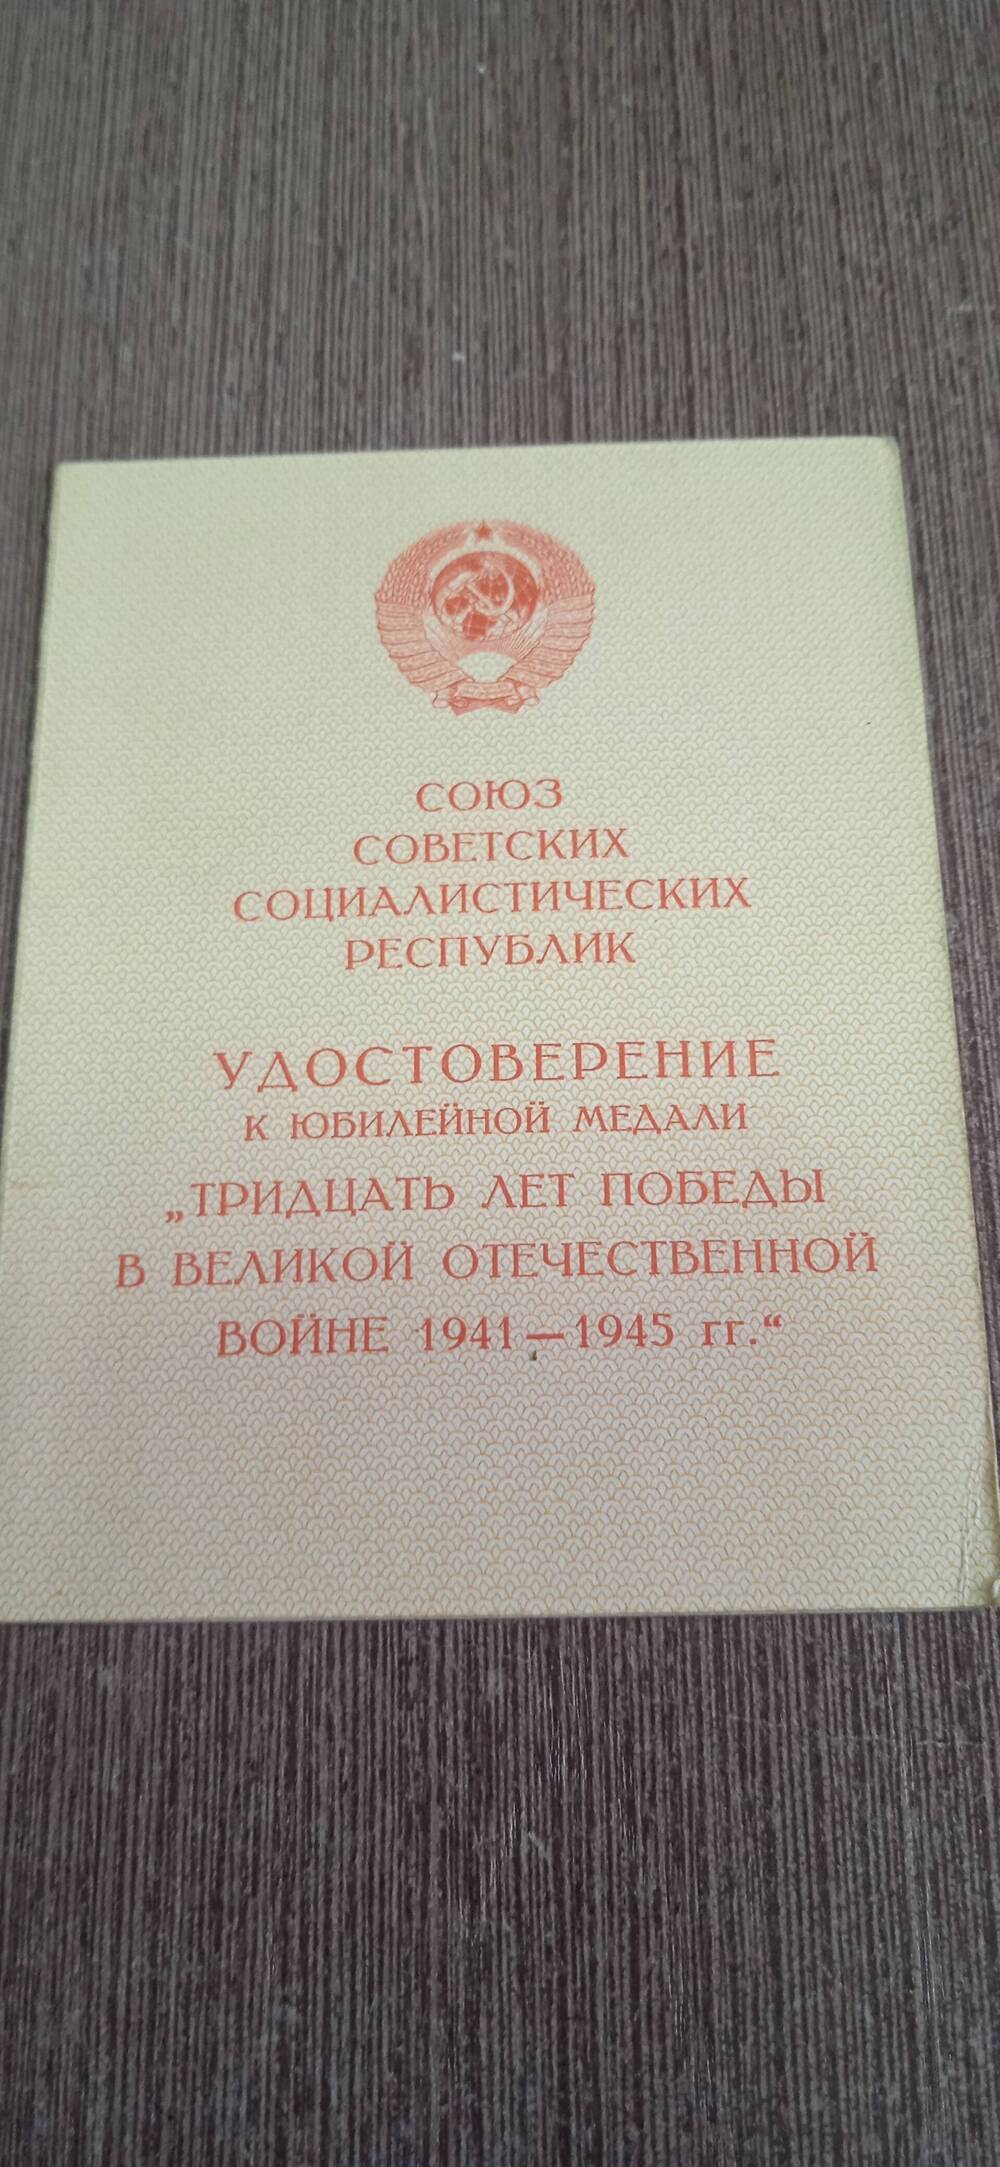 Удостоверение к юбилейной медали Тридцать лет победы в Великой Отечественной  войне 1941-1945г.г.
Закурдаев Андрей Андреевич.